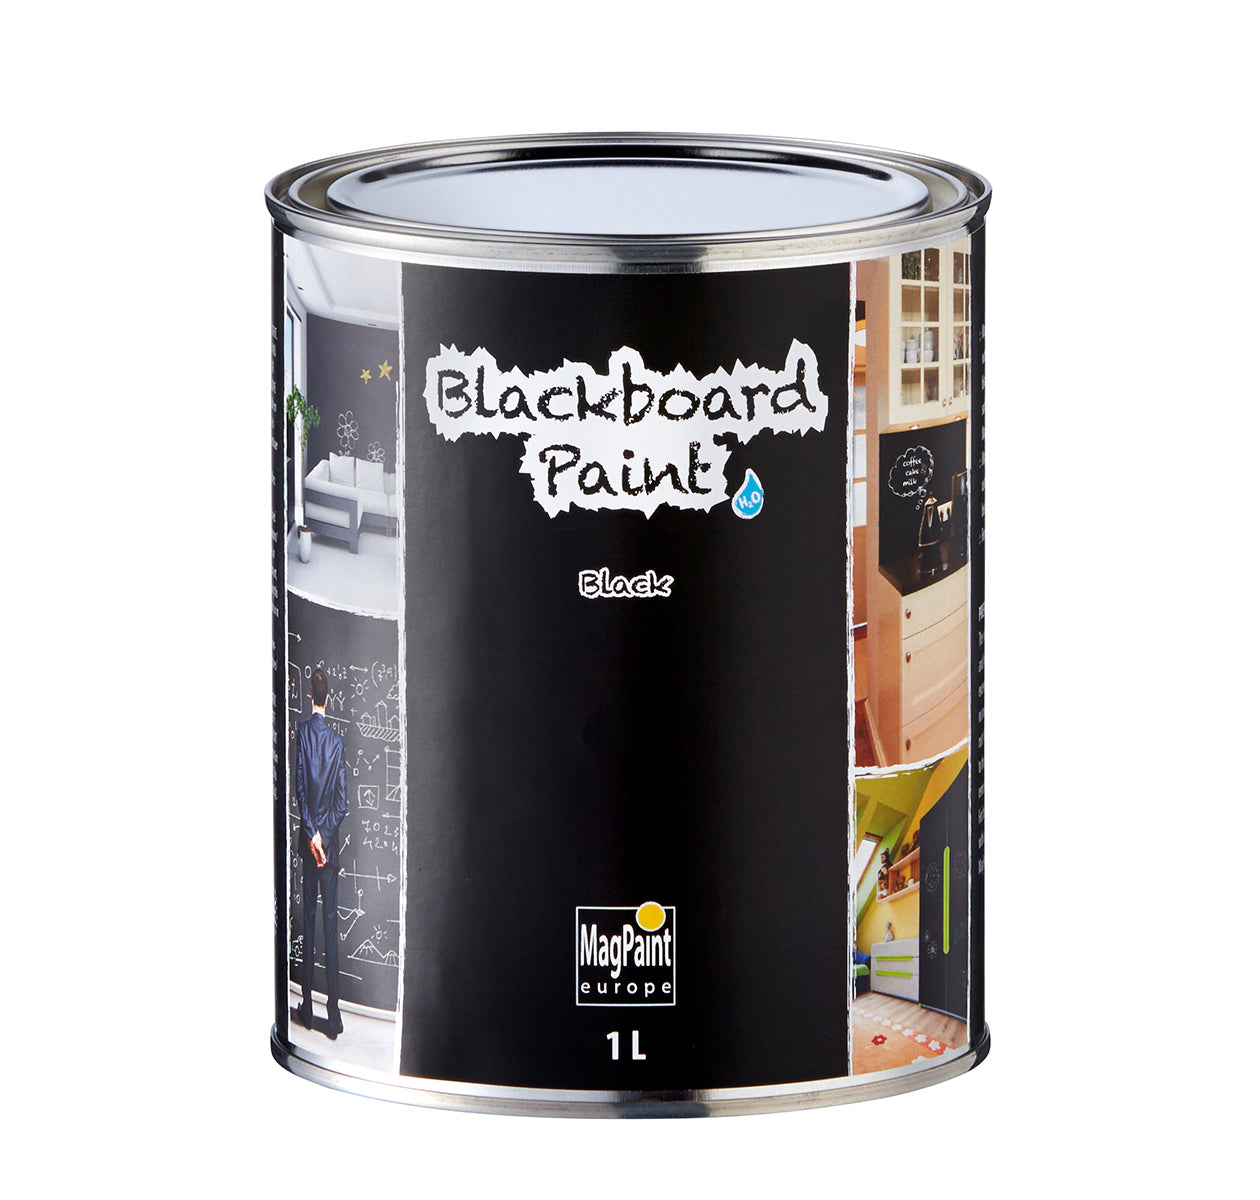 Blackboard Paint - Large black tin